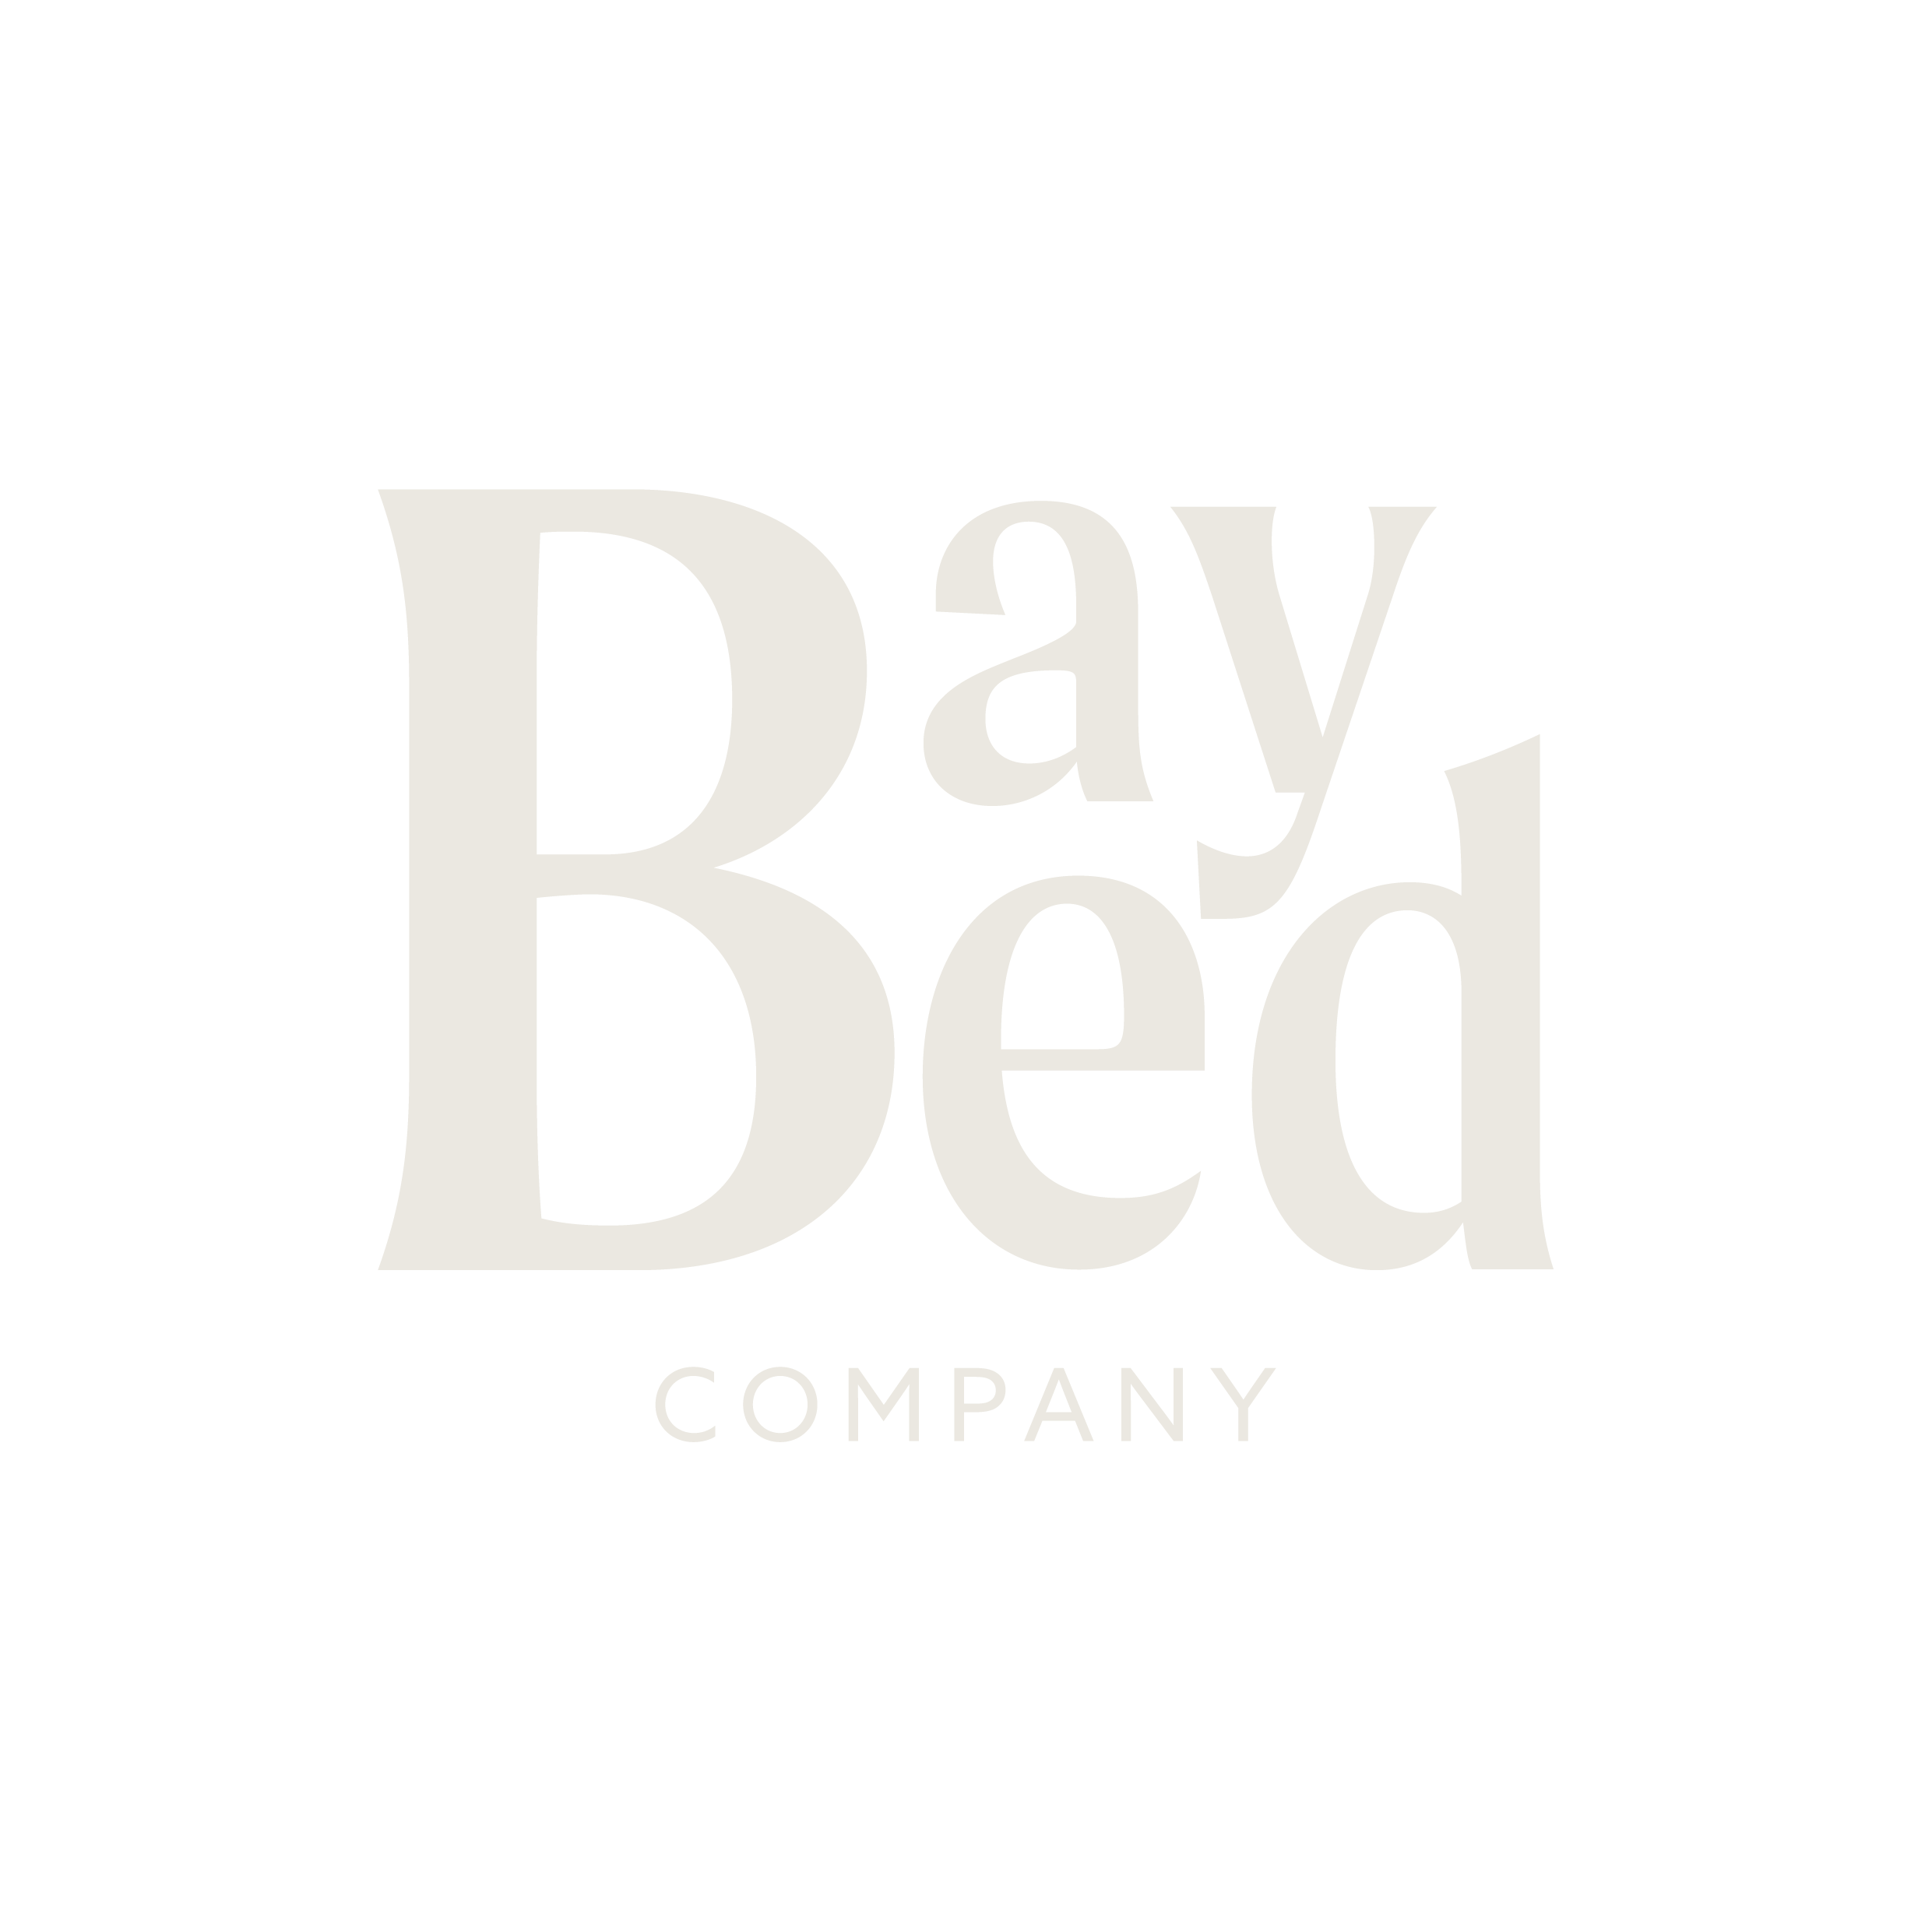 Bay Bed Company